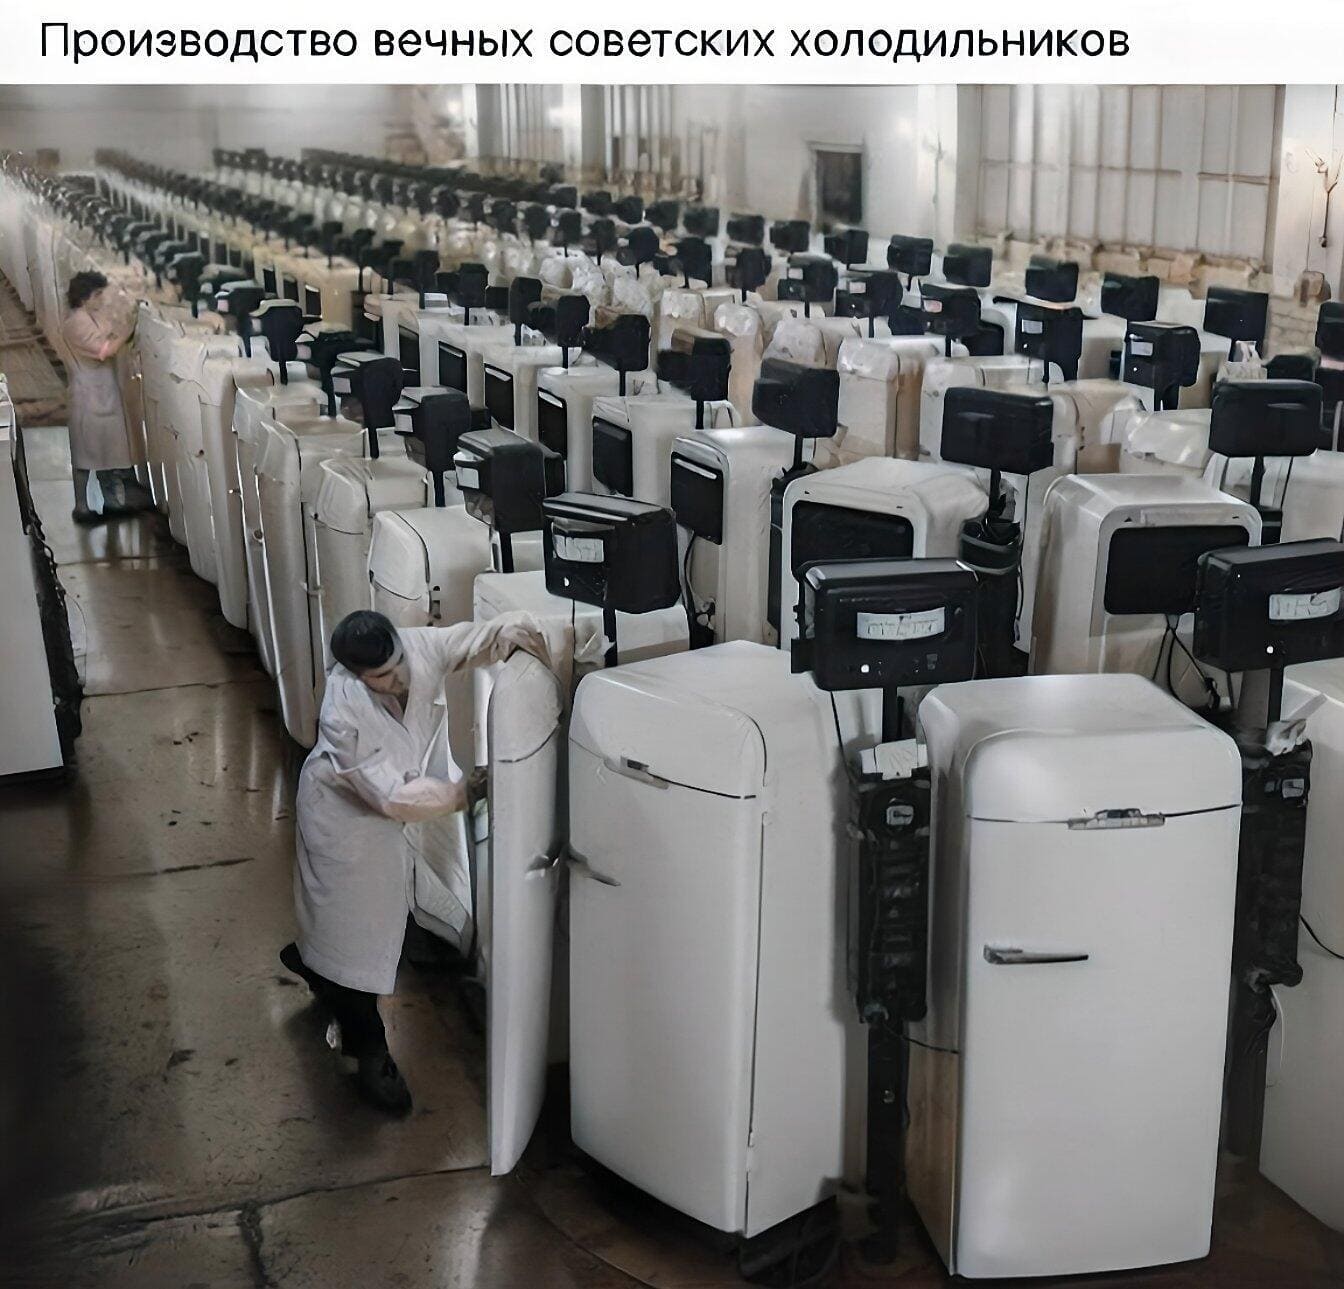 *Производство вечных советских холодильников*